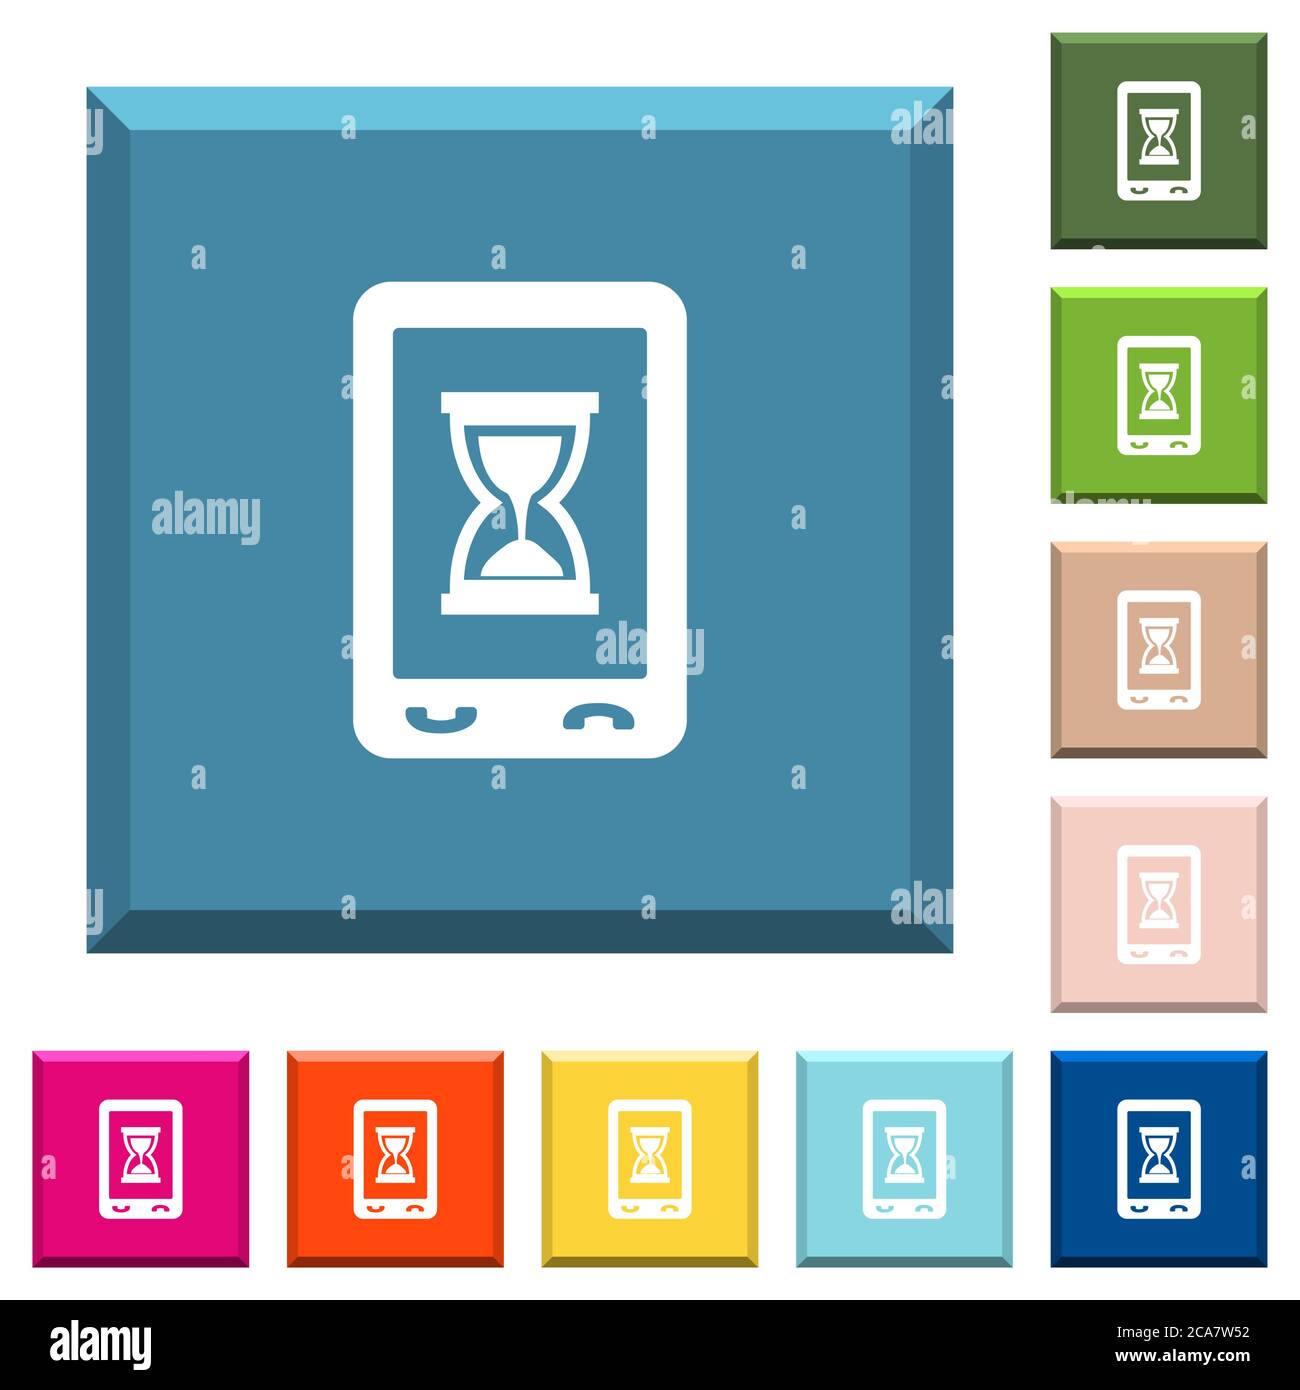 Iconos de trabajo móvil en blanco sobre botones cuadrados con bordes en varios colores de moda Ilustración del Vector